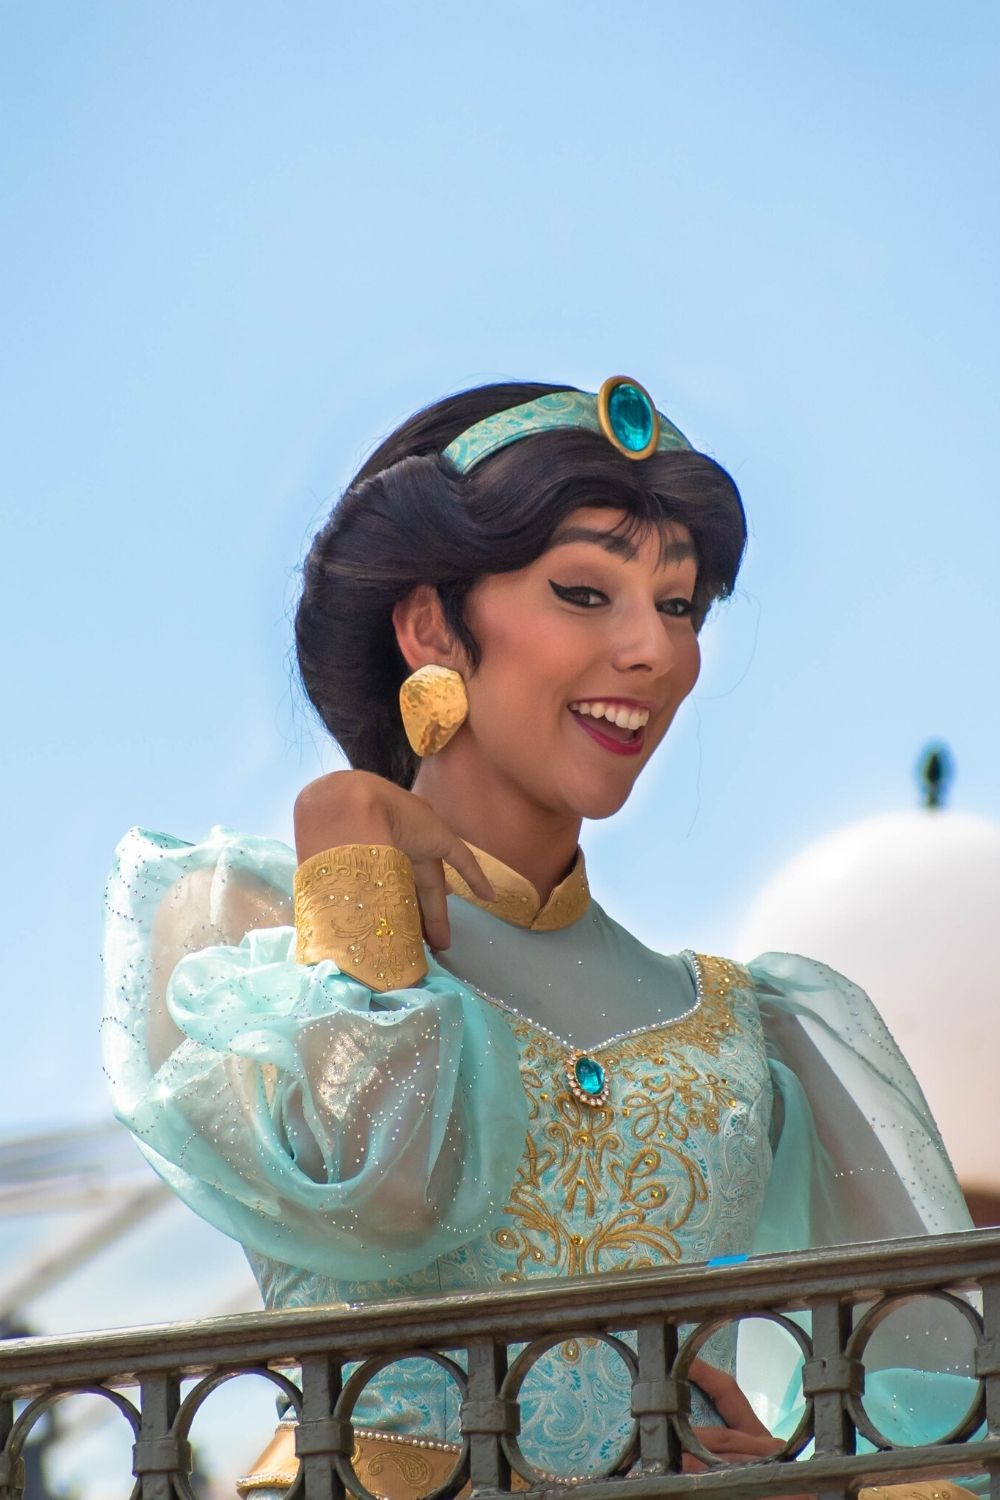 Princess Jasmine during a character meet and greet at Magic Kingdom